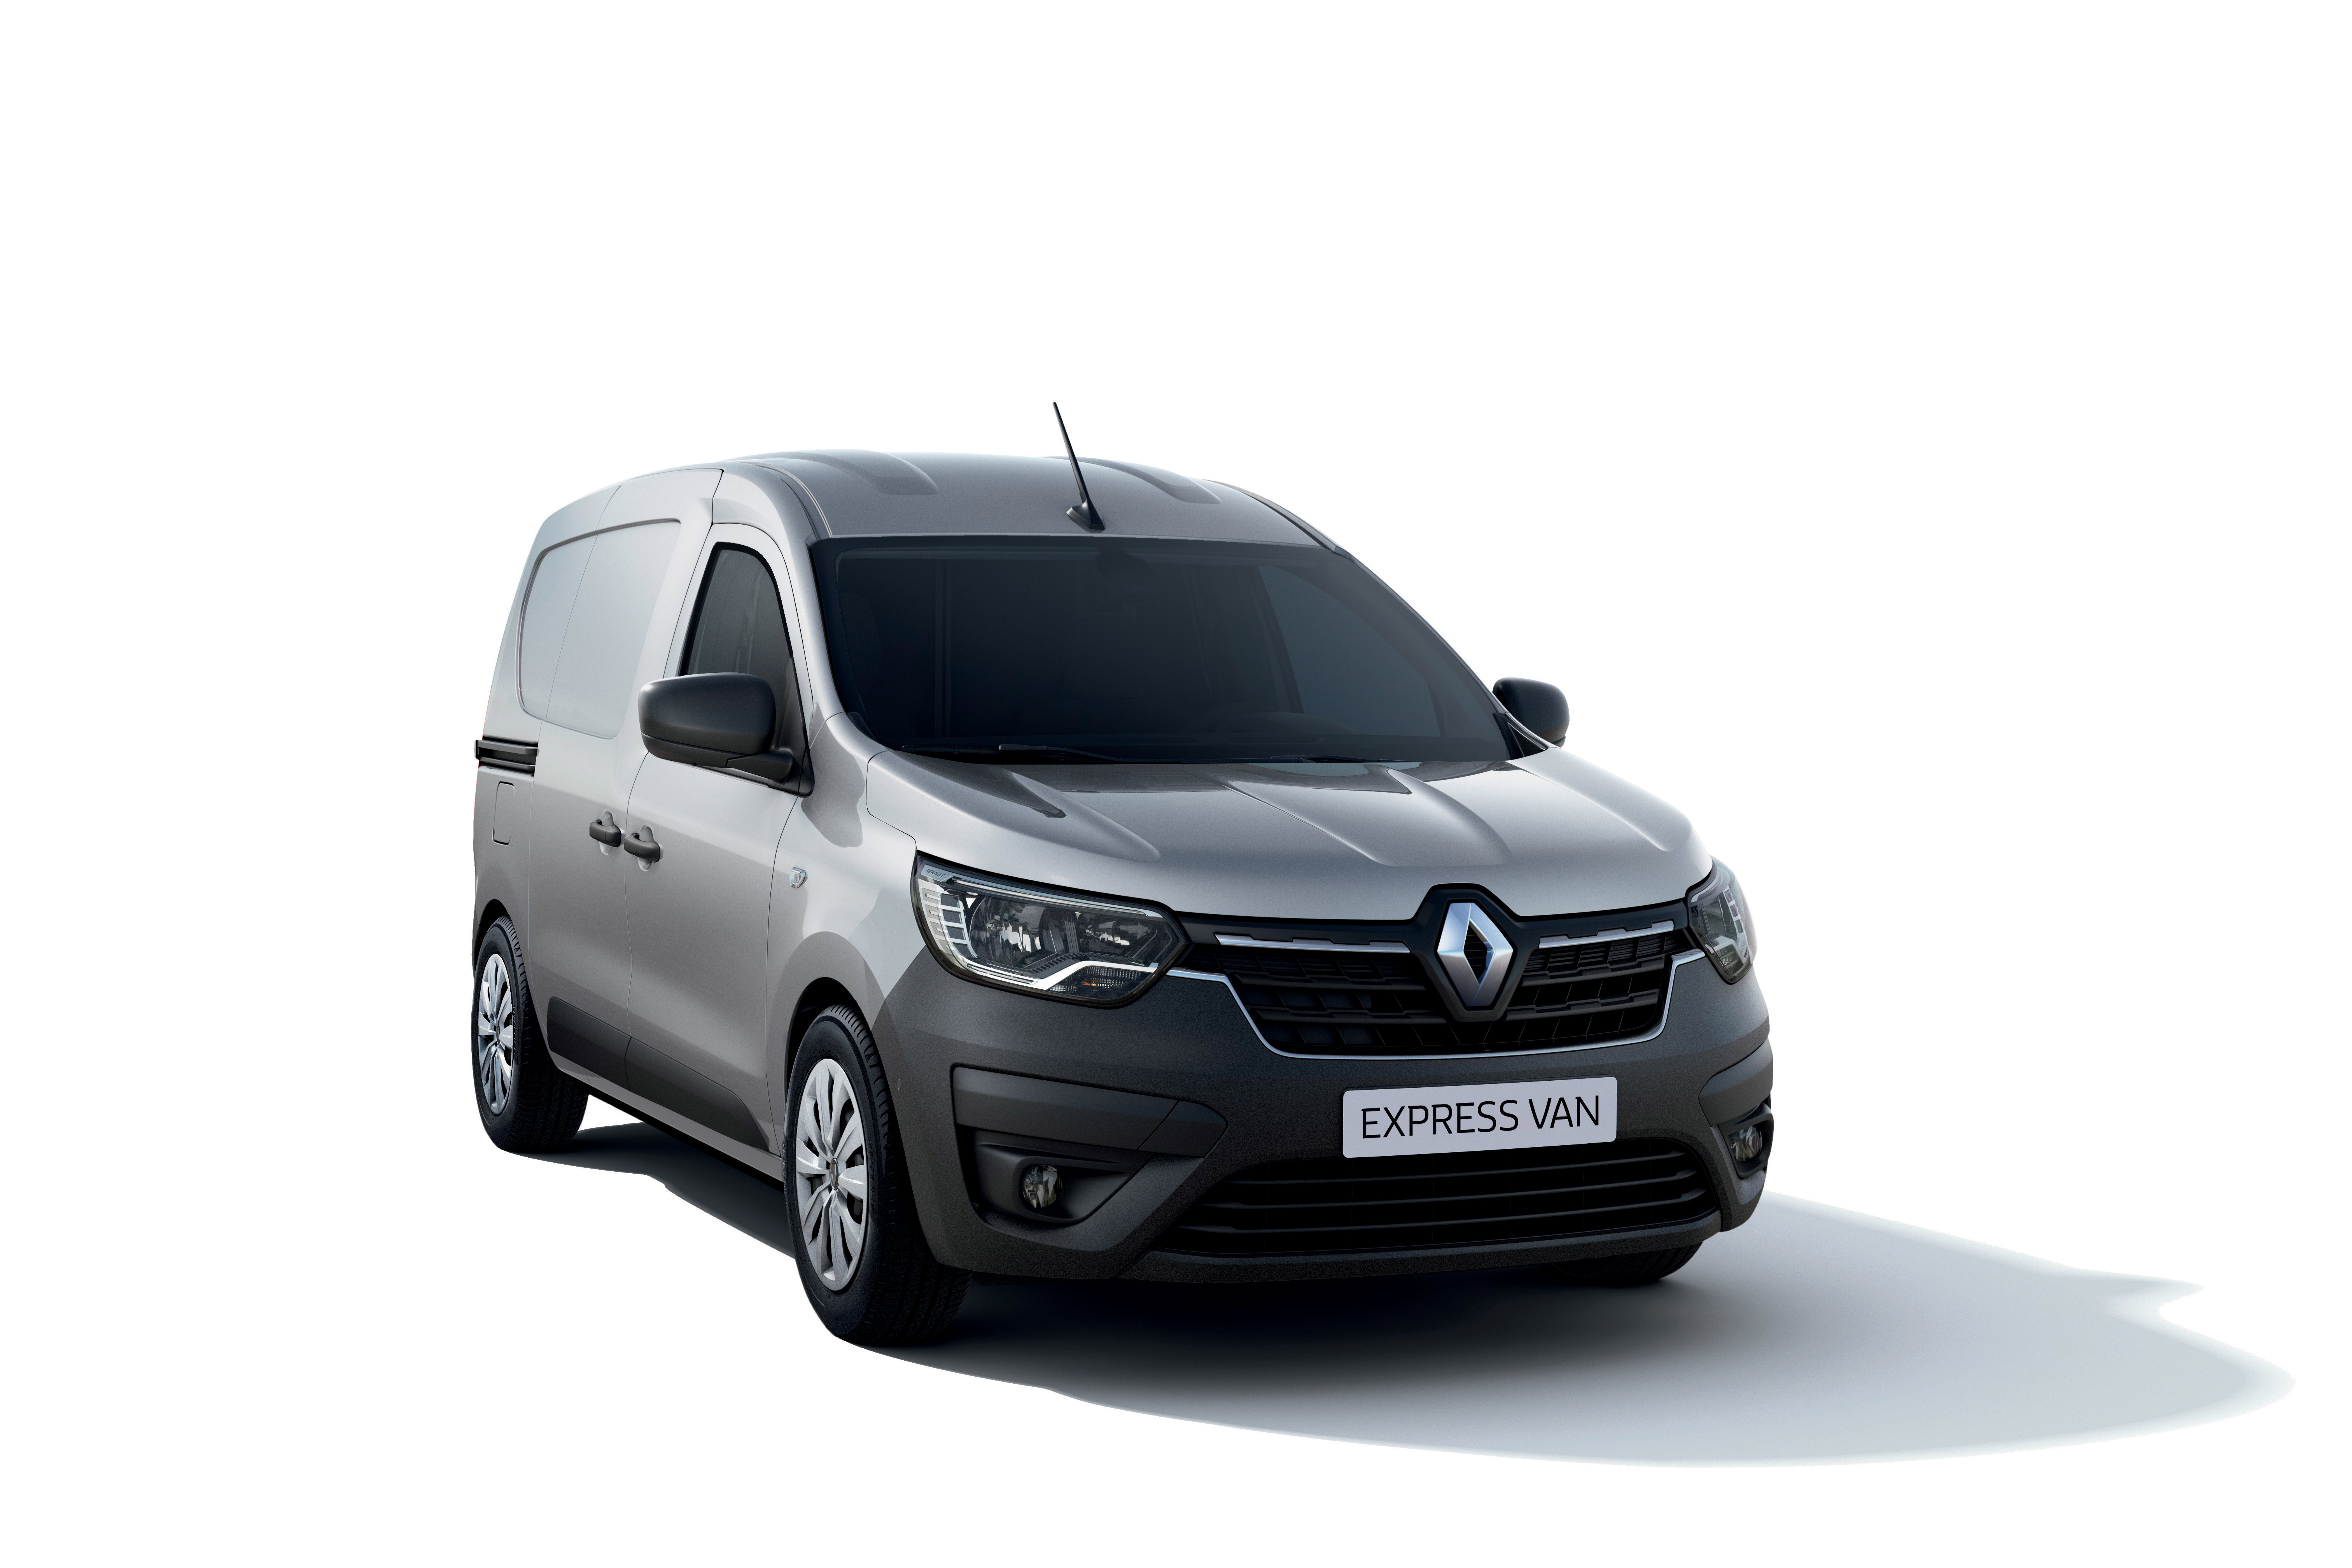 Uus Renault Kangoo kaubik on uuenduslik tarbesõiduk erinevate ümberehitusvõimalustega. 